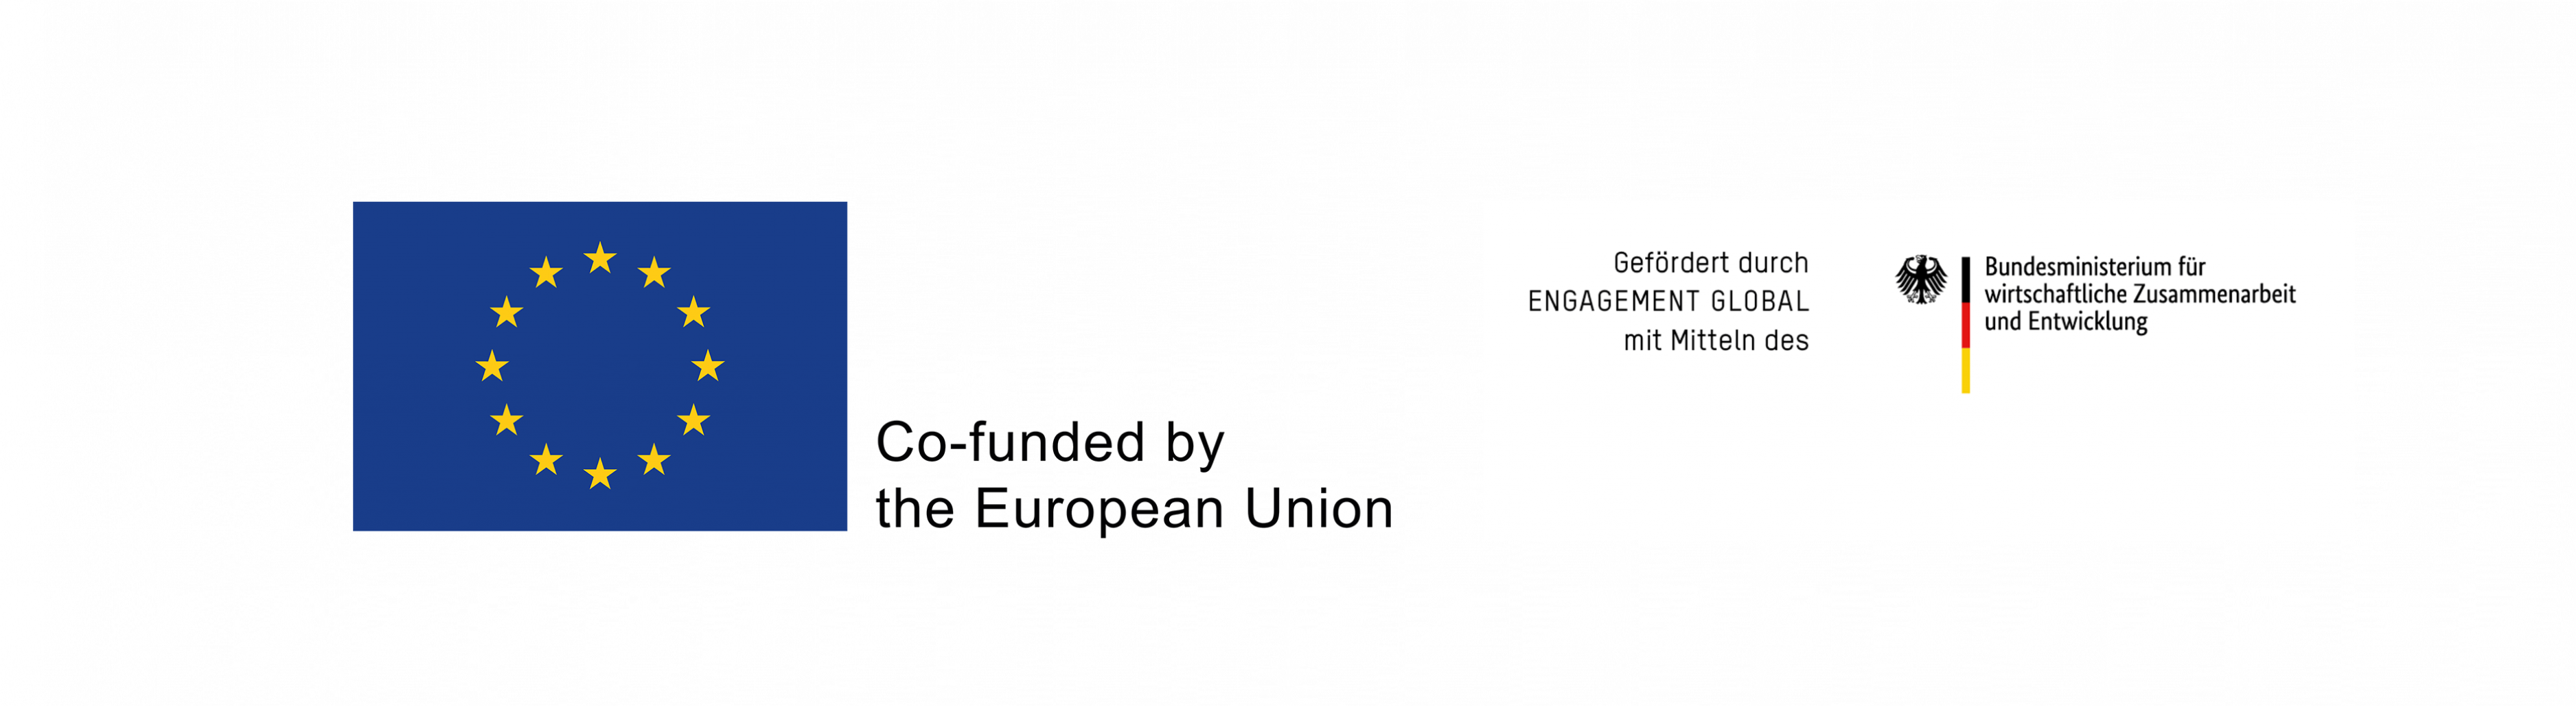 Logo der Europäischen Union und von Engagement Global-BMZ (Förderhinweis)